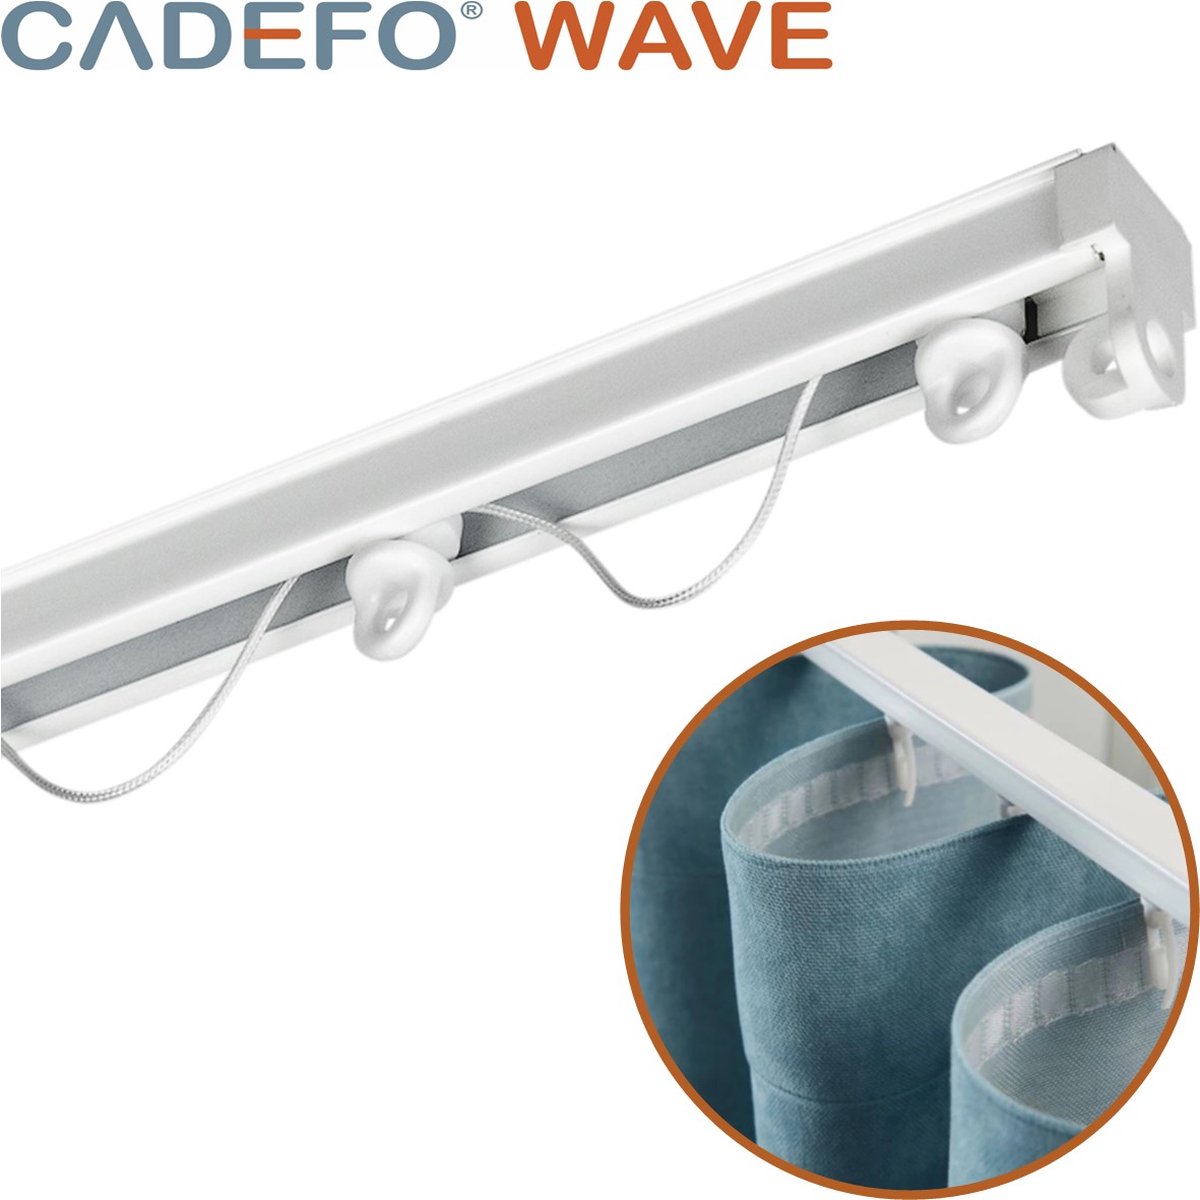 CADEFO WAVE (551 - 600 cm) Gordijnrails - Compleet op maat! - UIT 1 STUK - Leverbaar tot 6 meter - Plafondbevestiging - Lengte 554 cm